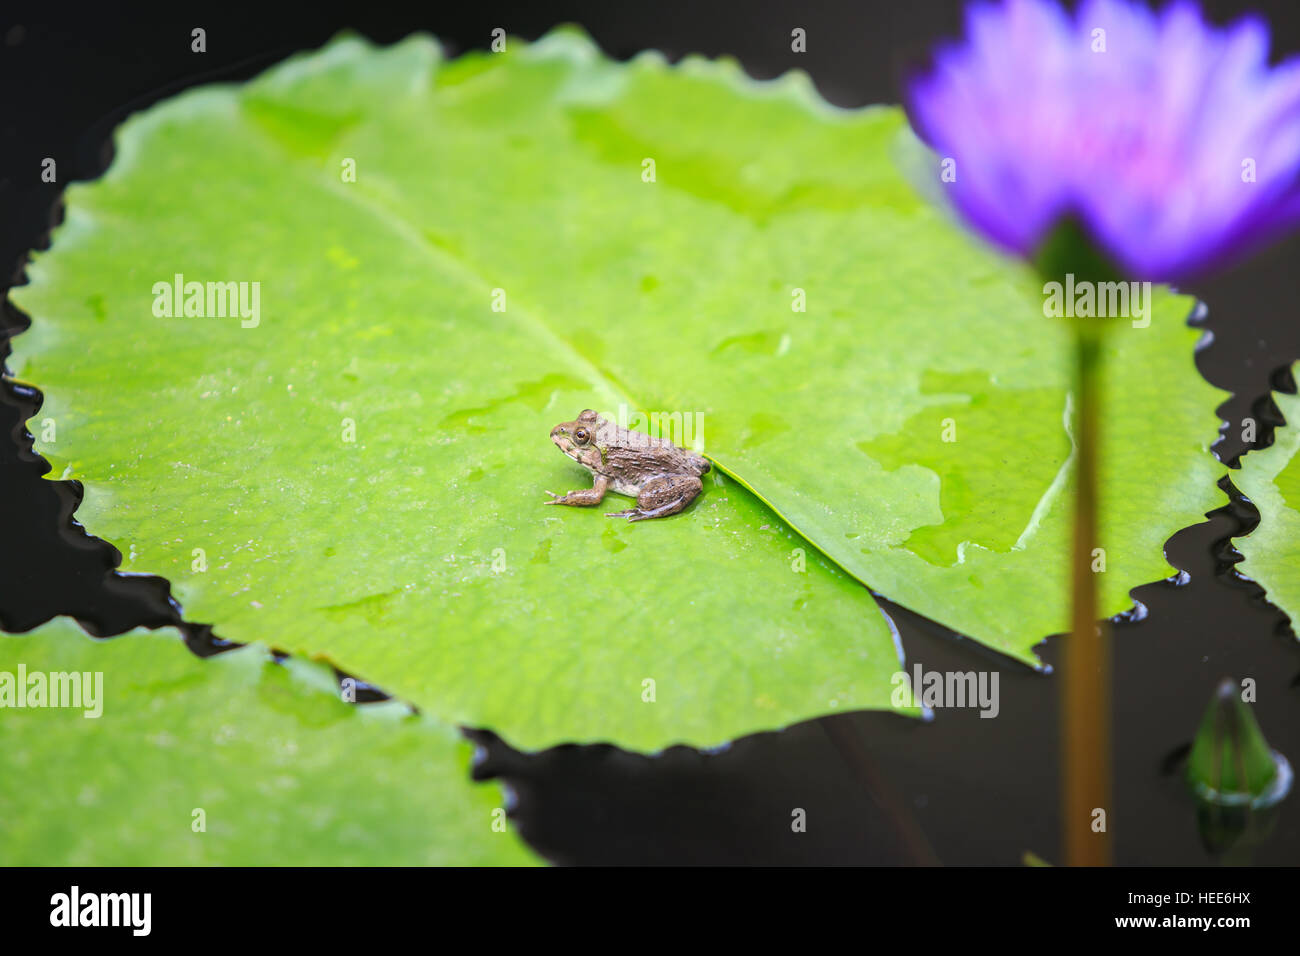 Près d'une petite grenouille verte sur feuille de lotus Banque D'Images